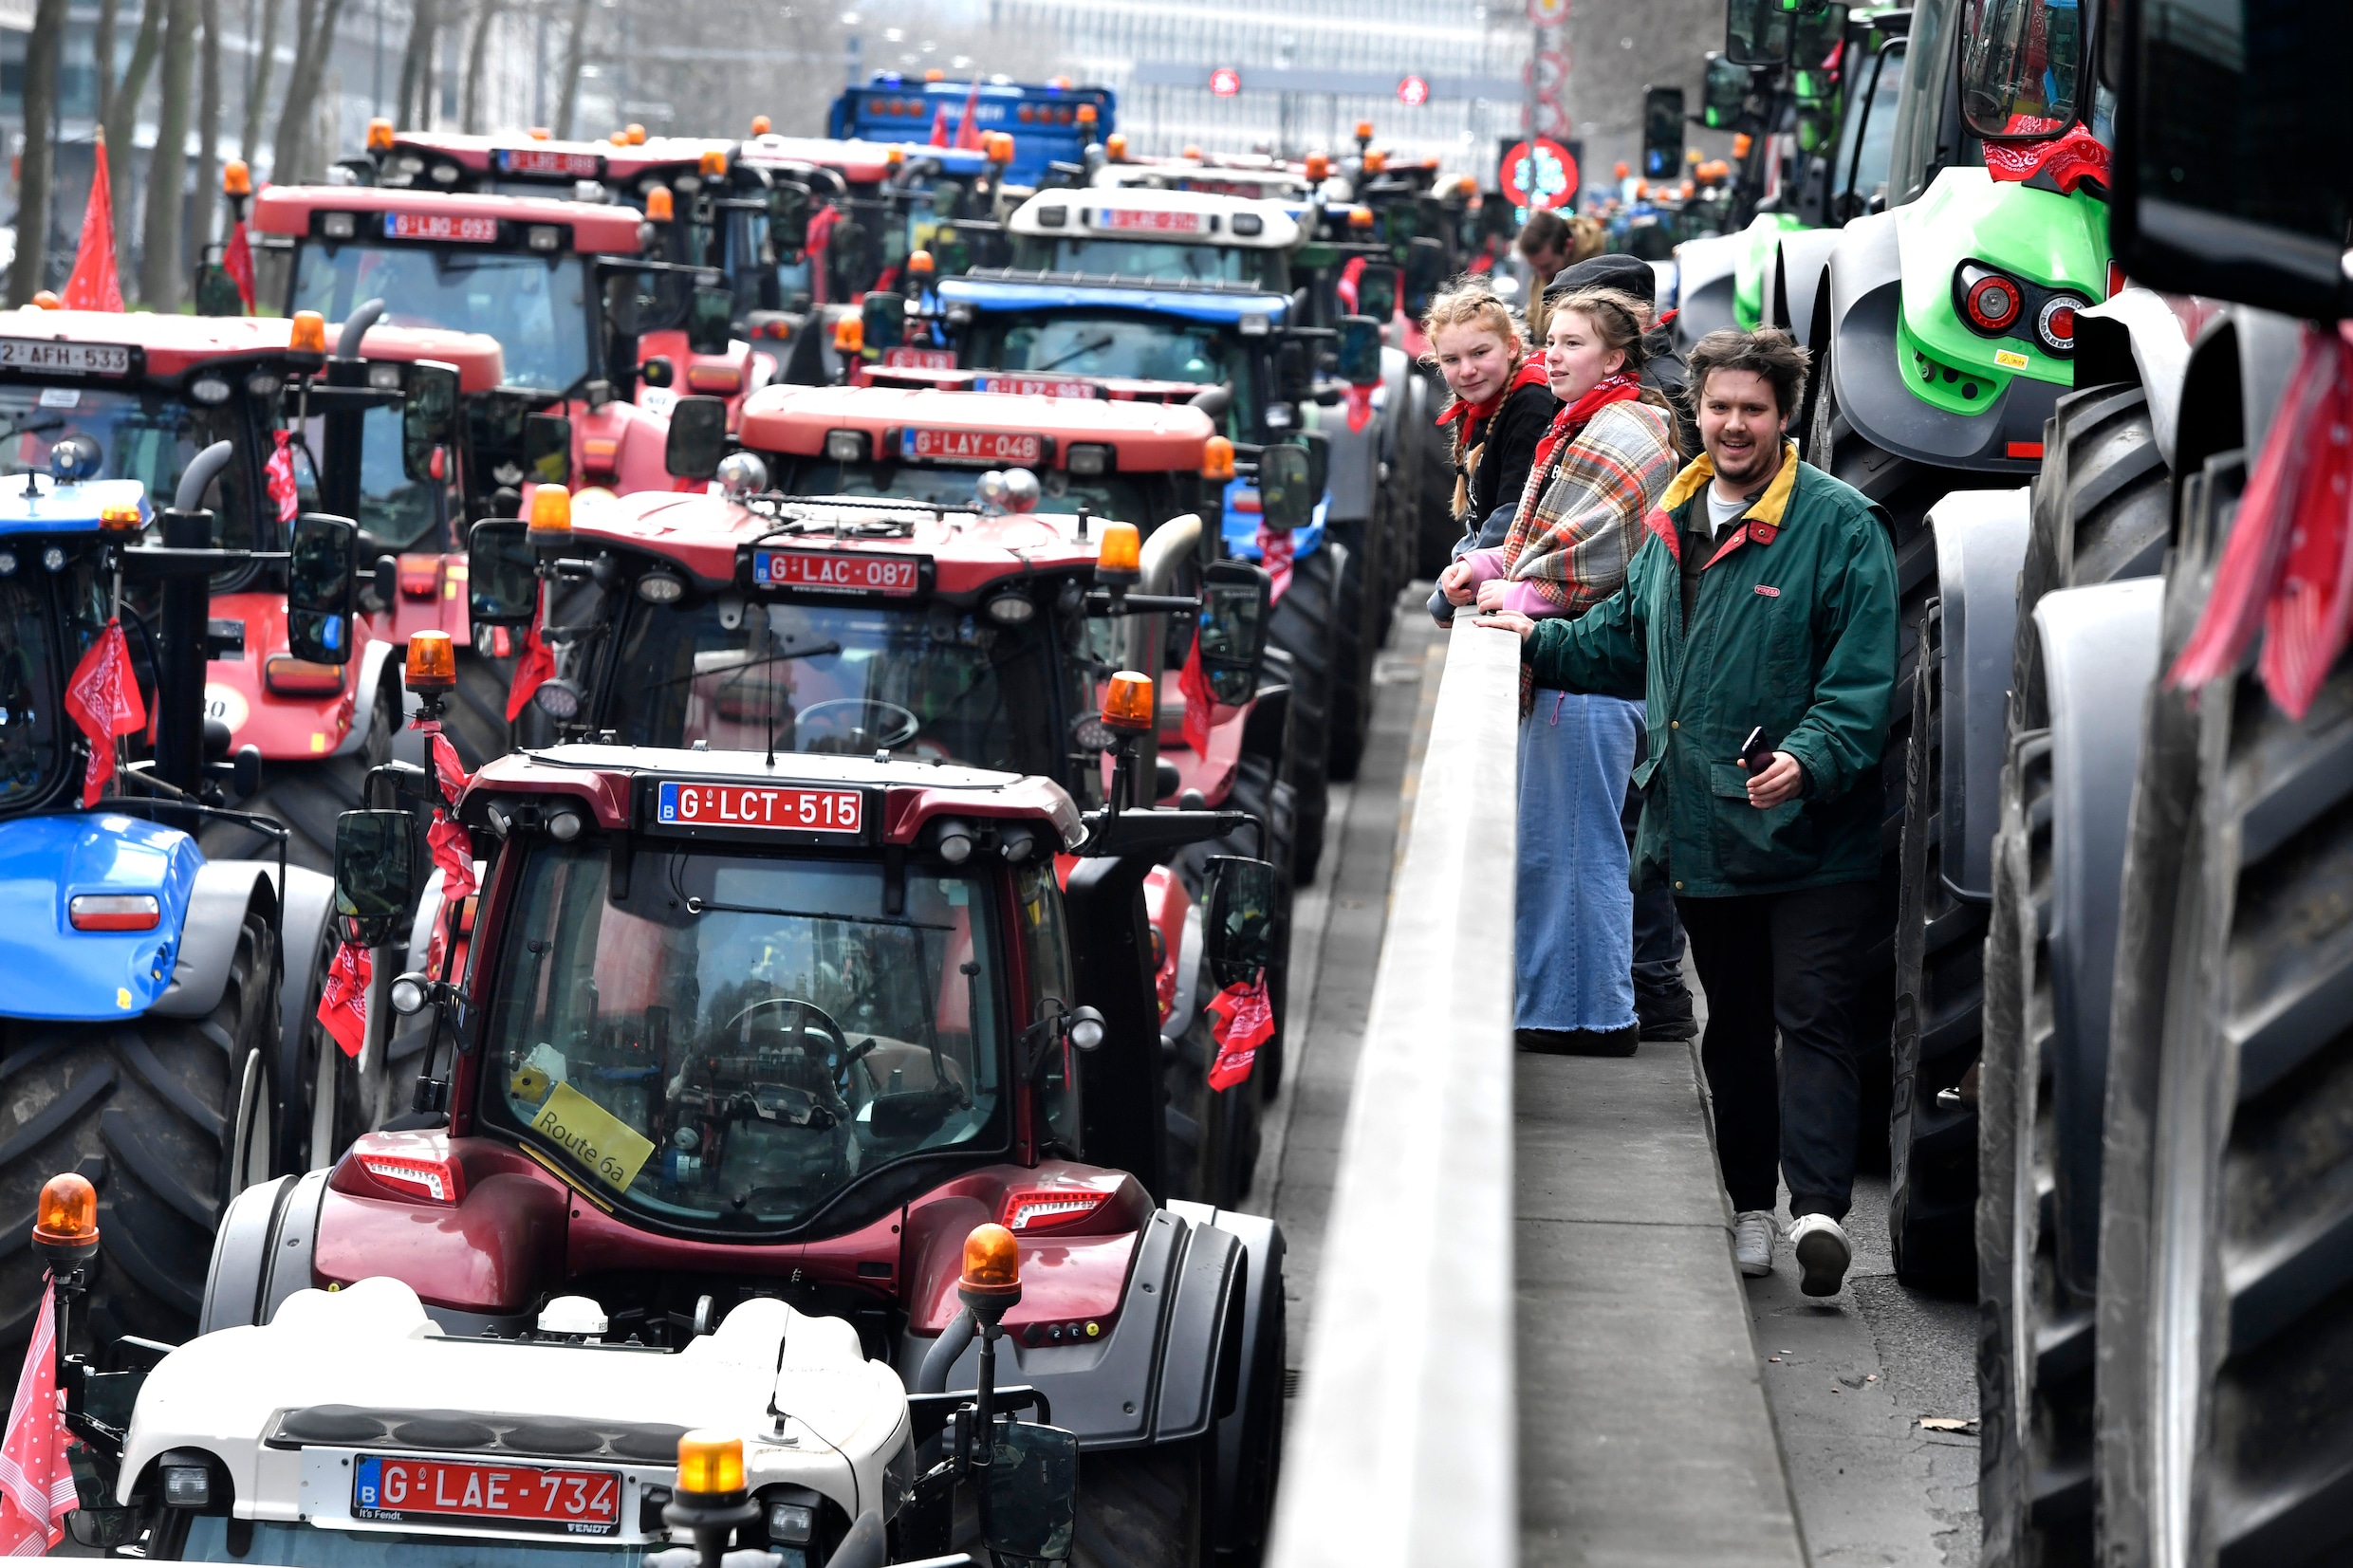 Live - Boerenprotest. Uittocht colonne uit Brussel verloopt moeizaam, grote hinder op Kleine Ring en omgeving